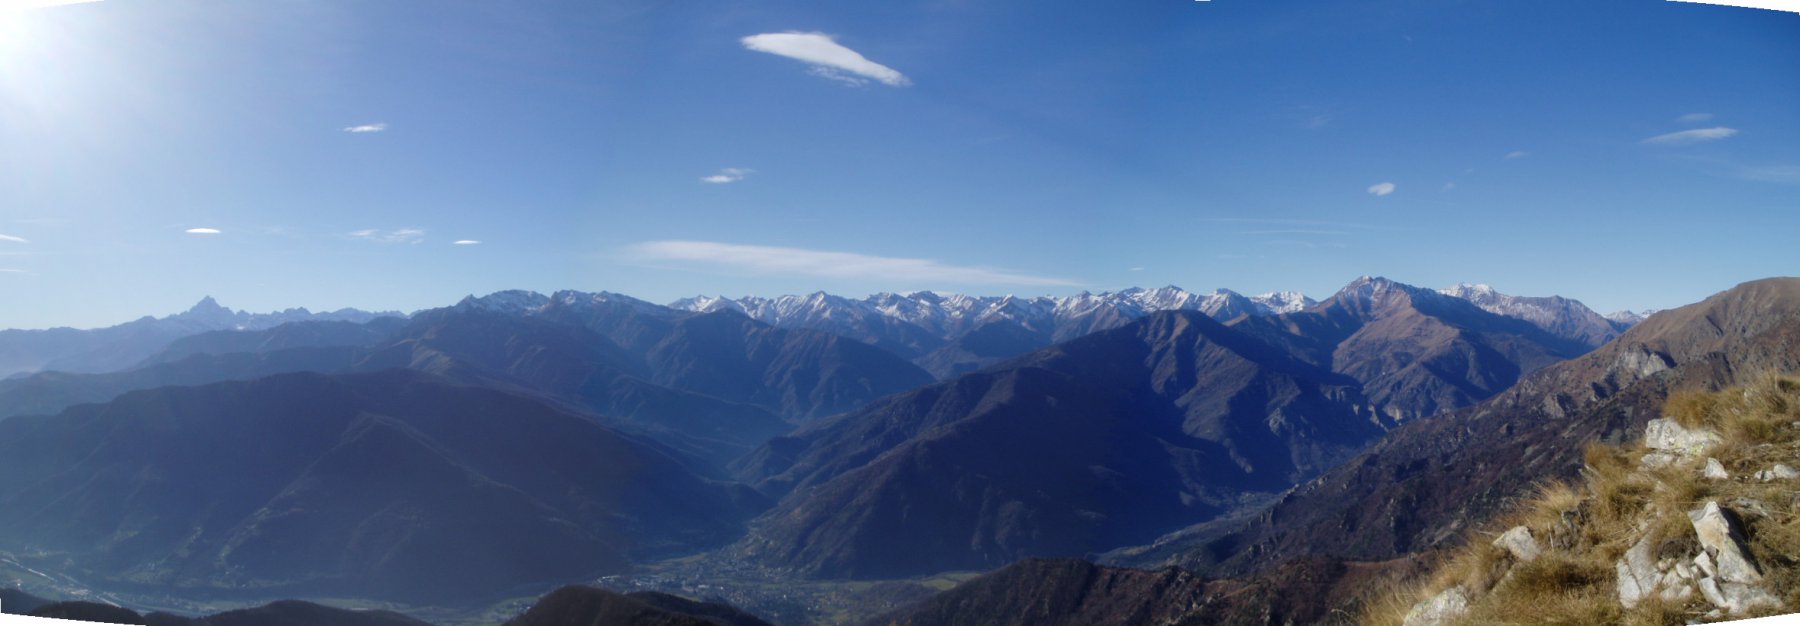 Panoramica sul Monviso ed i monti della Val Chisone.